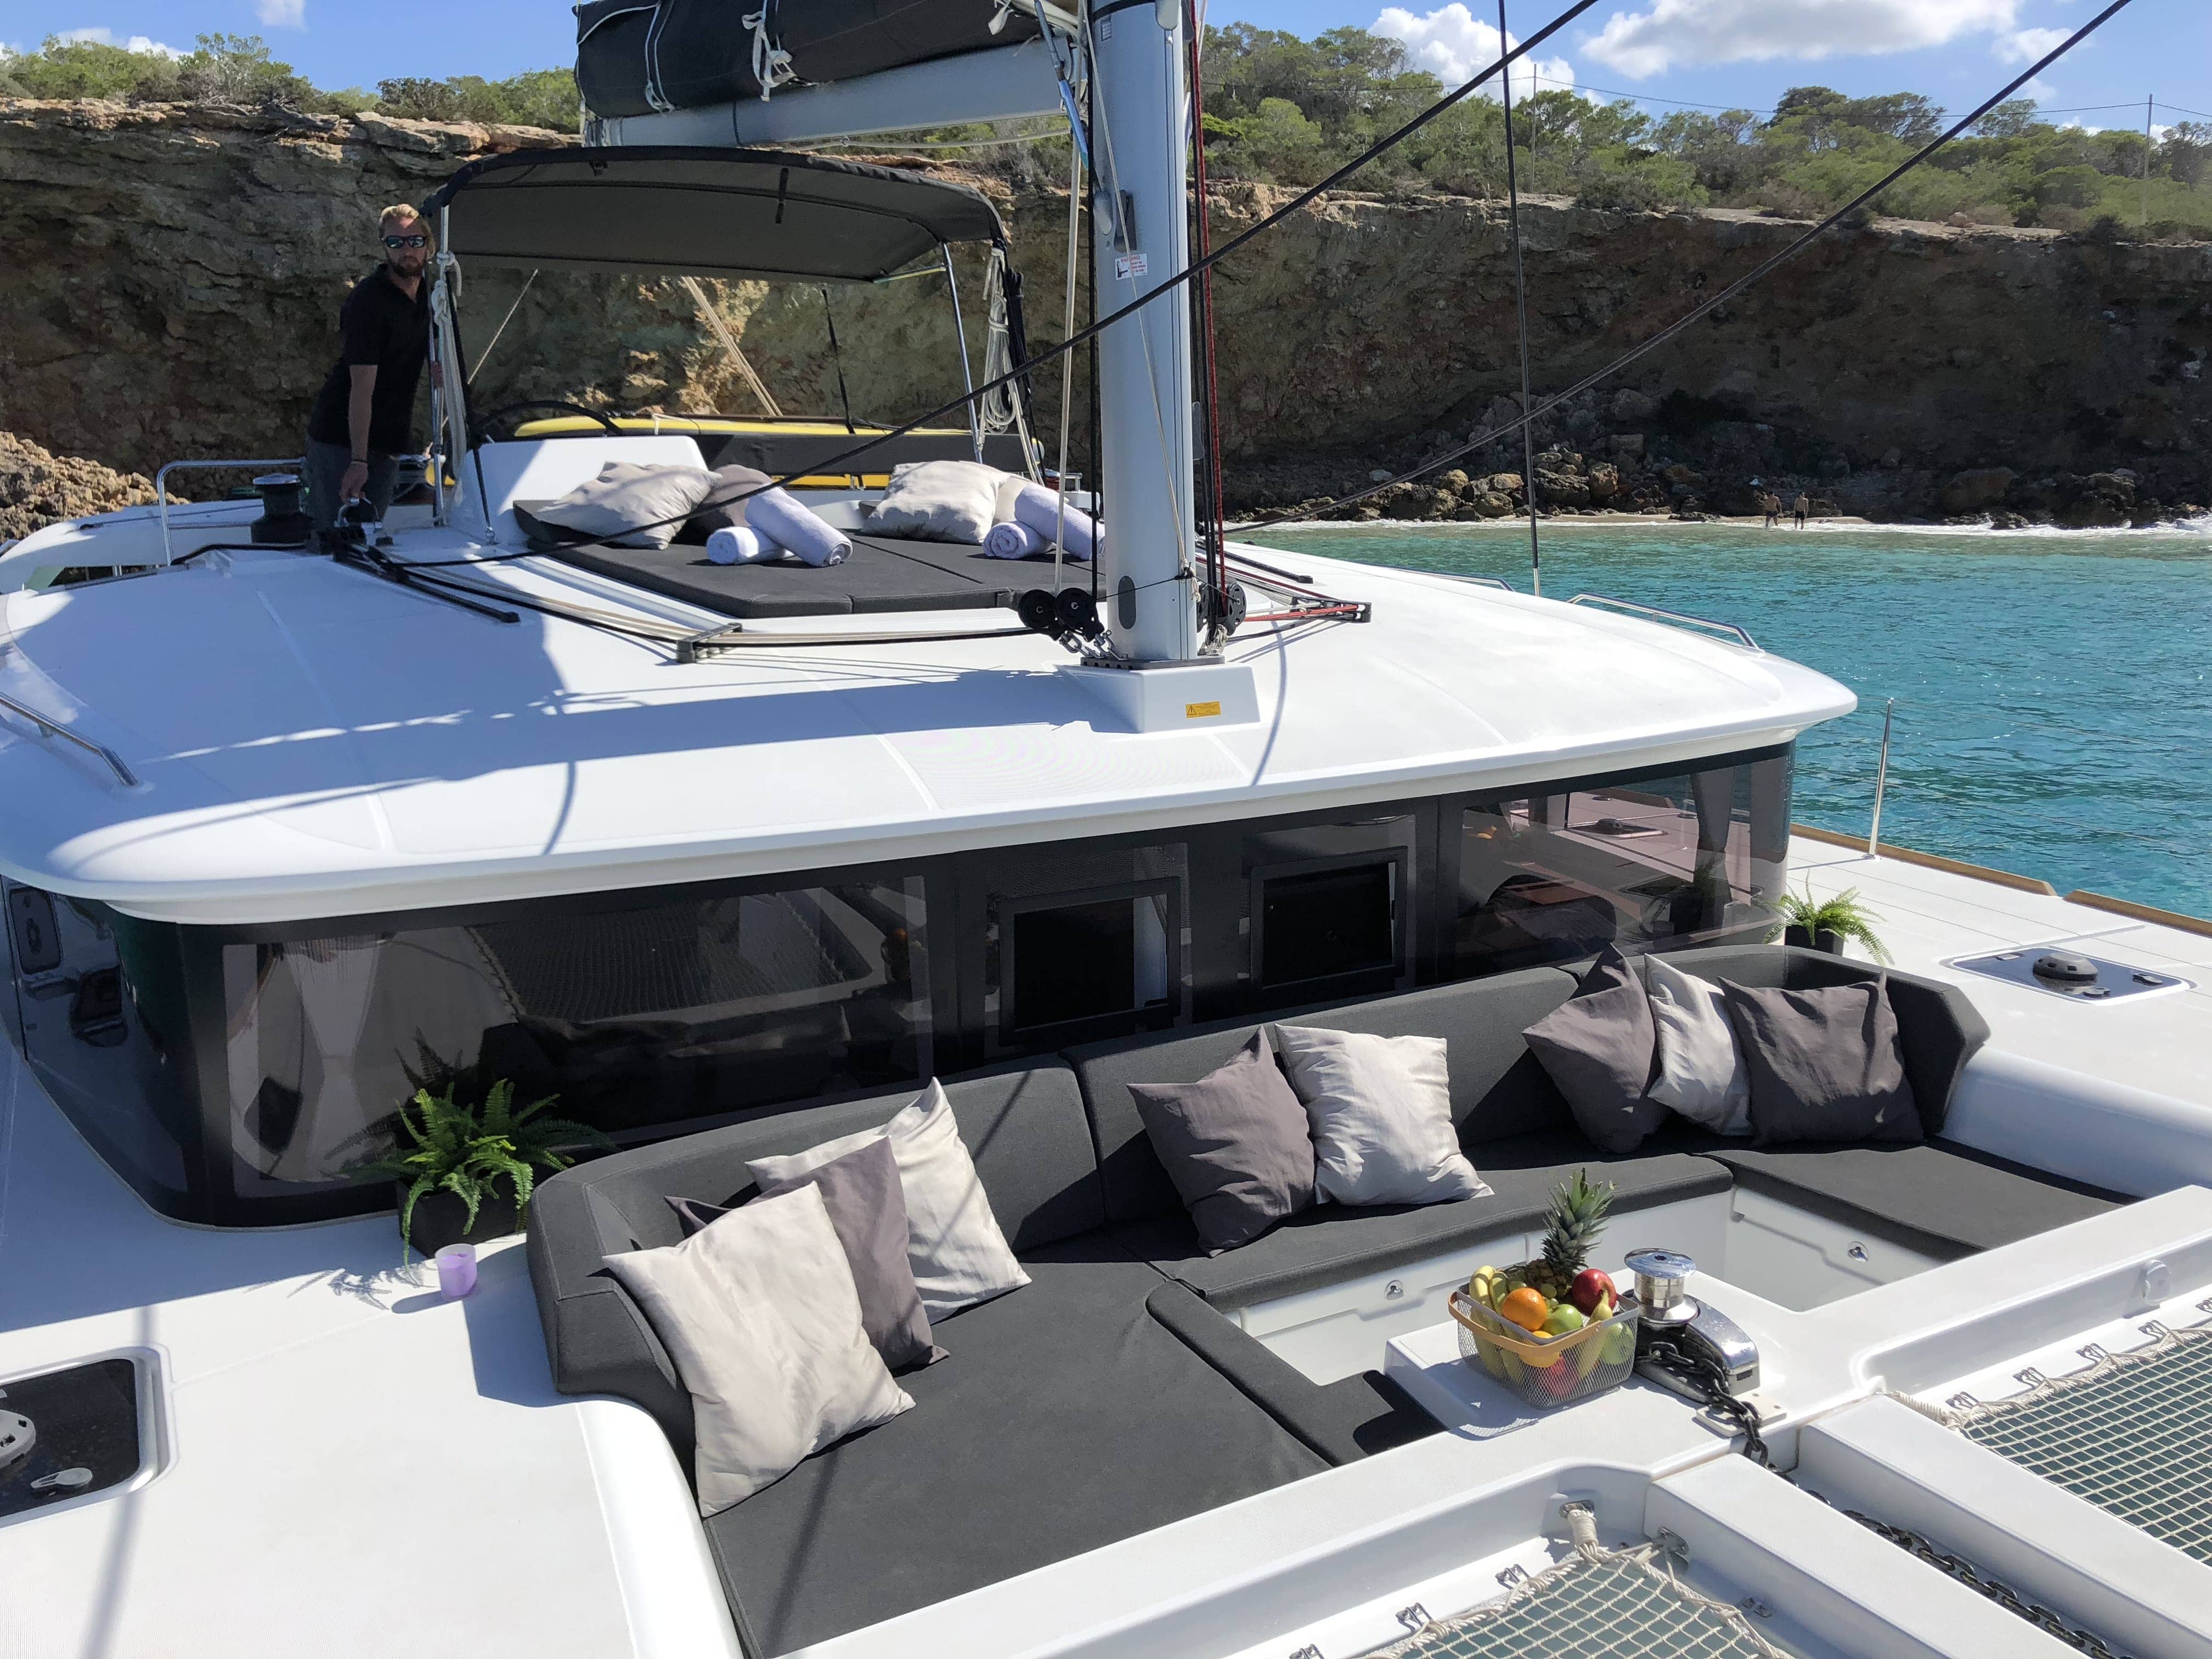 ⚓ Nuevos Catamaranes en Mallorca, Ibiza, Formentera